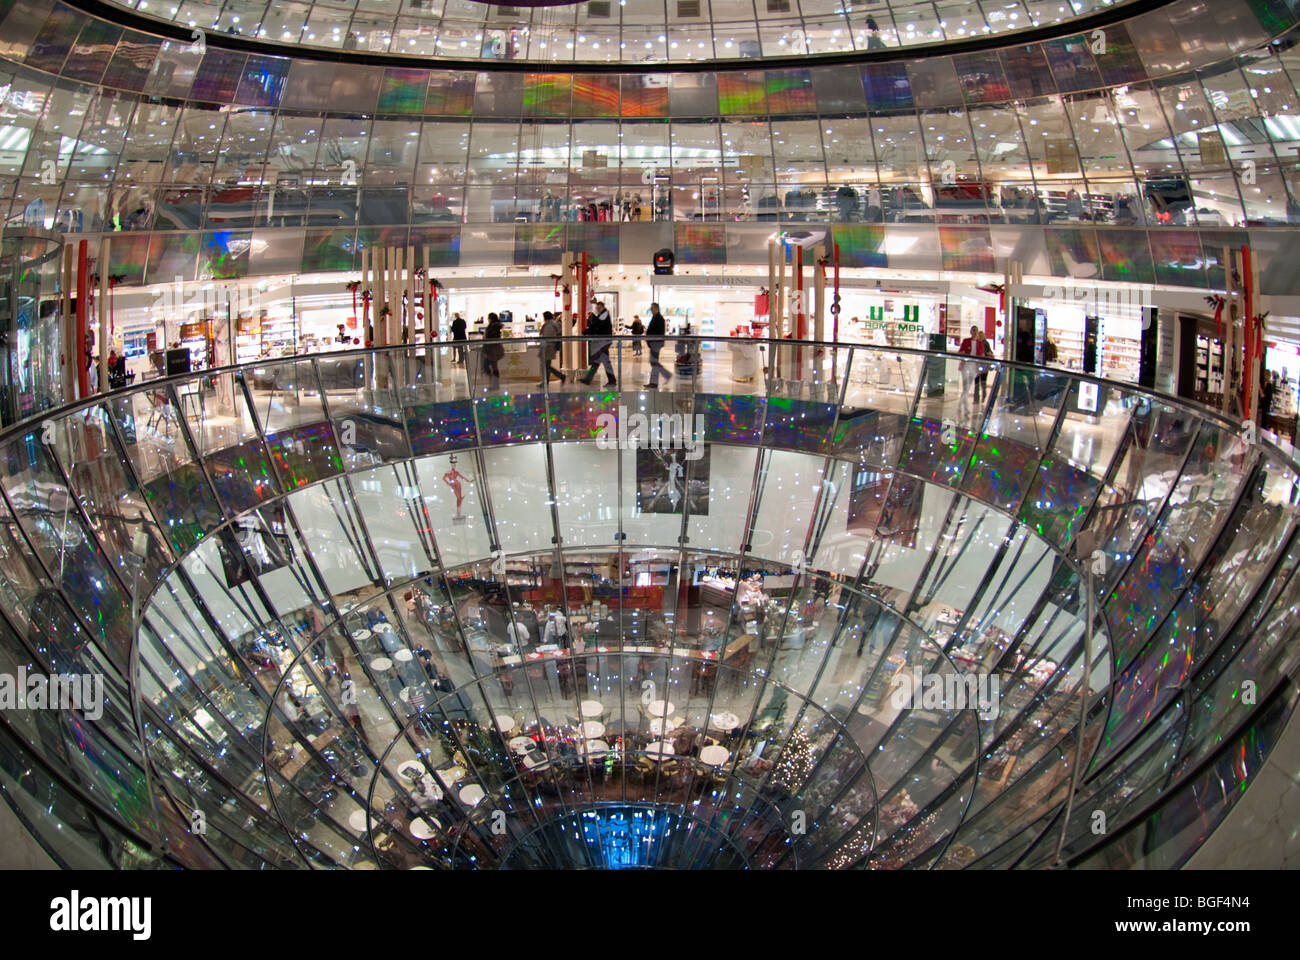 Vue de l'intérieur des murs de verre spectaculaire atrium de Galeries Lafayette sur la Friedrichstrasse à Mitte Berlin Allemagne Banque D'Images